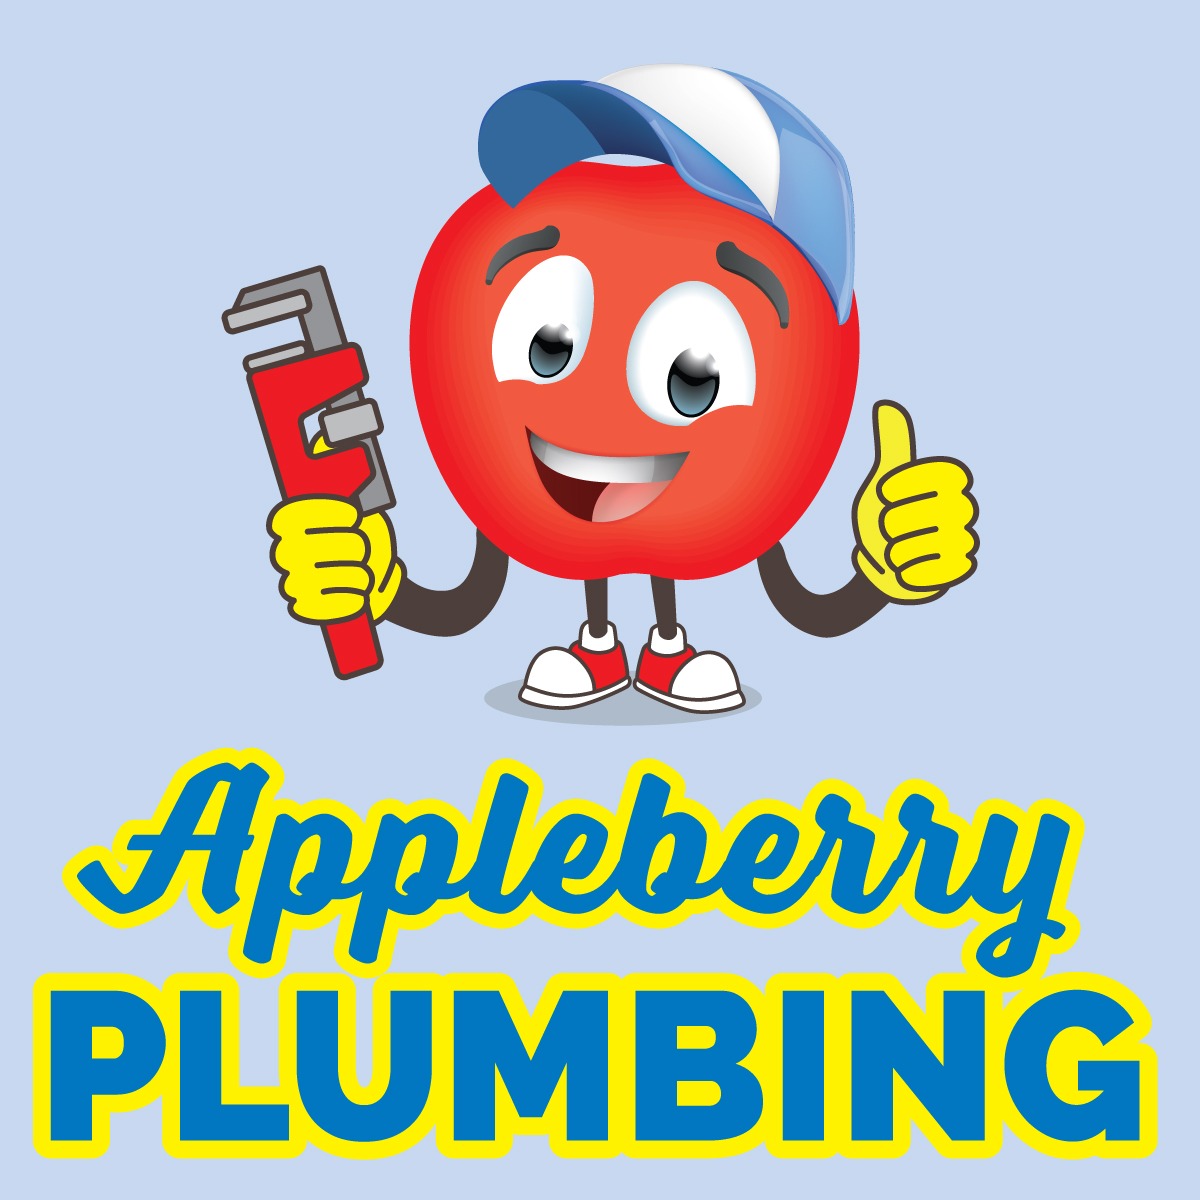 Appleberry Plumbing Services